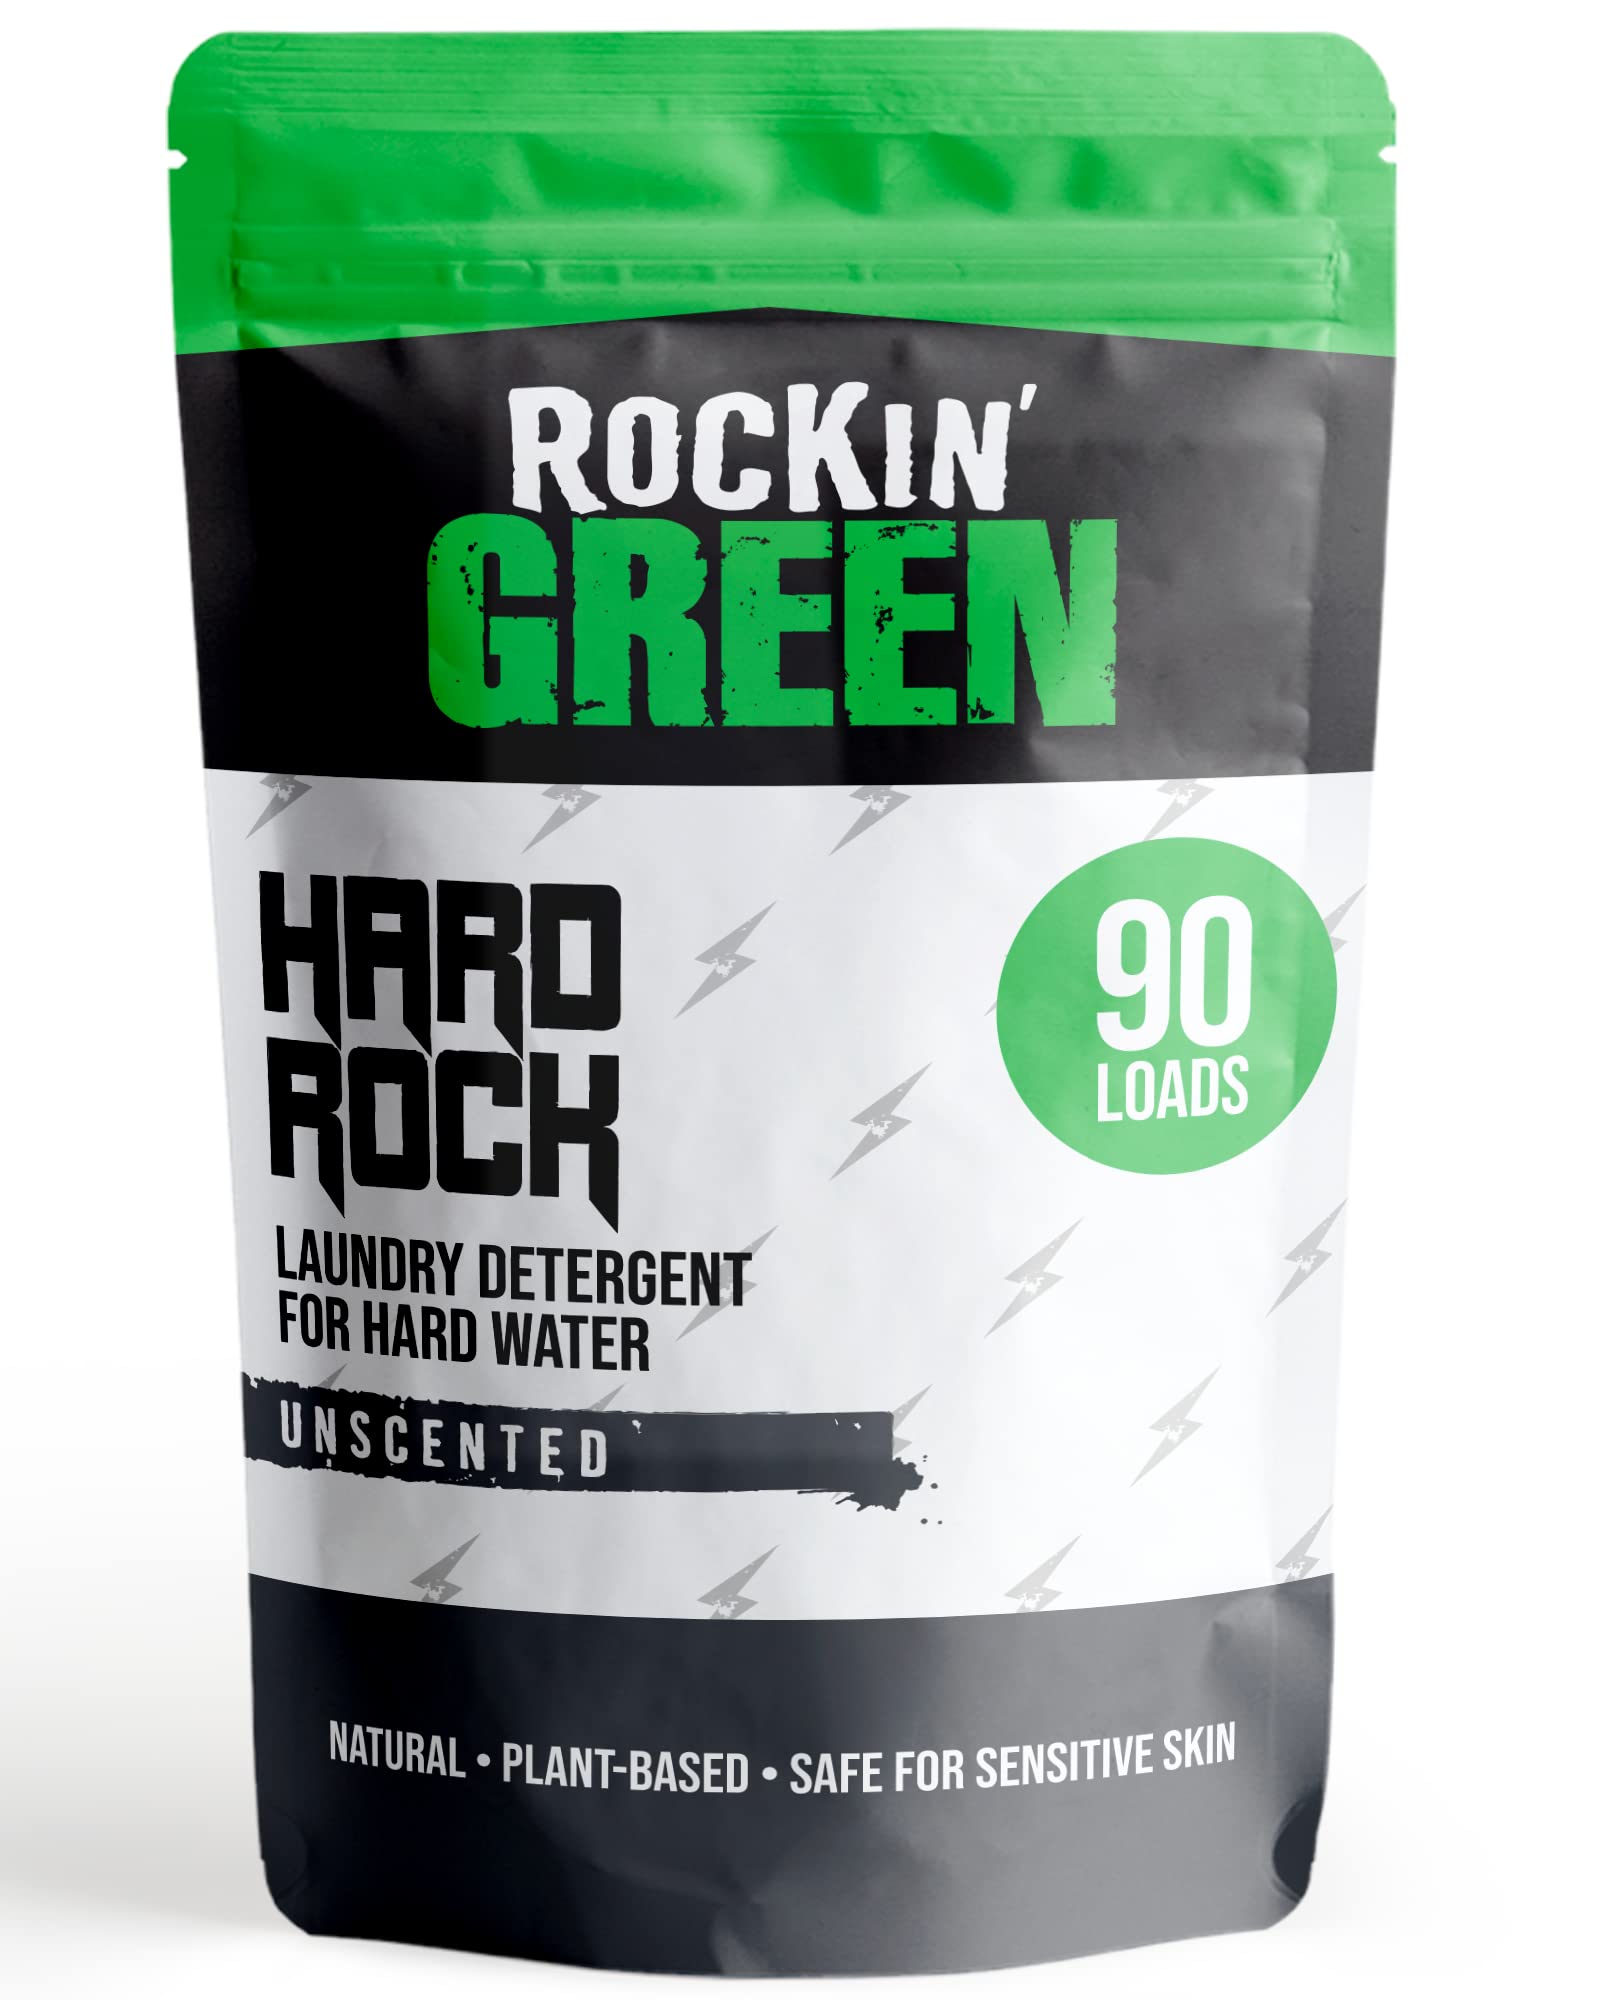 Rockin' Green Hard Rock Laundry Detergent (90 Loads), Plant based, All Natural Laundry Detergent Powder, Vegan and Biodegradable Odor Fighter, Safe for Sensitive Skin, 45 oz (Unscented).